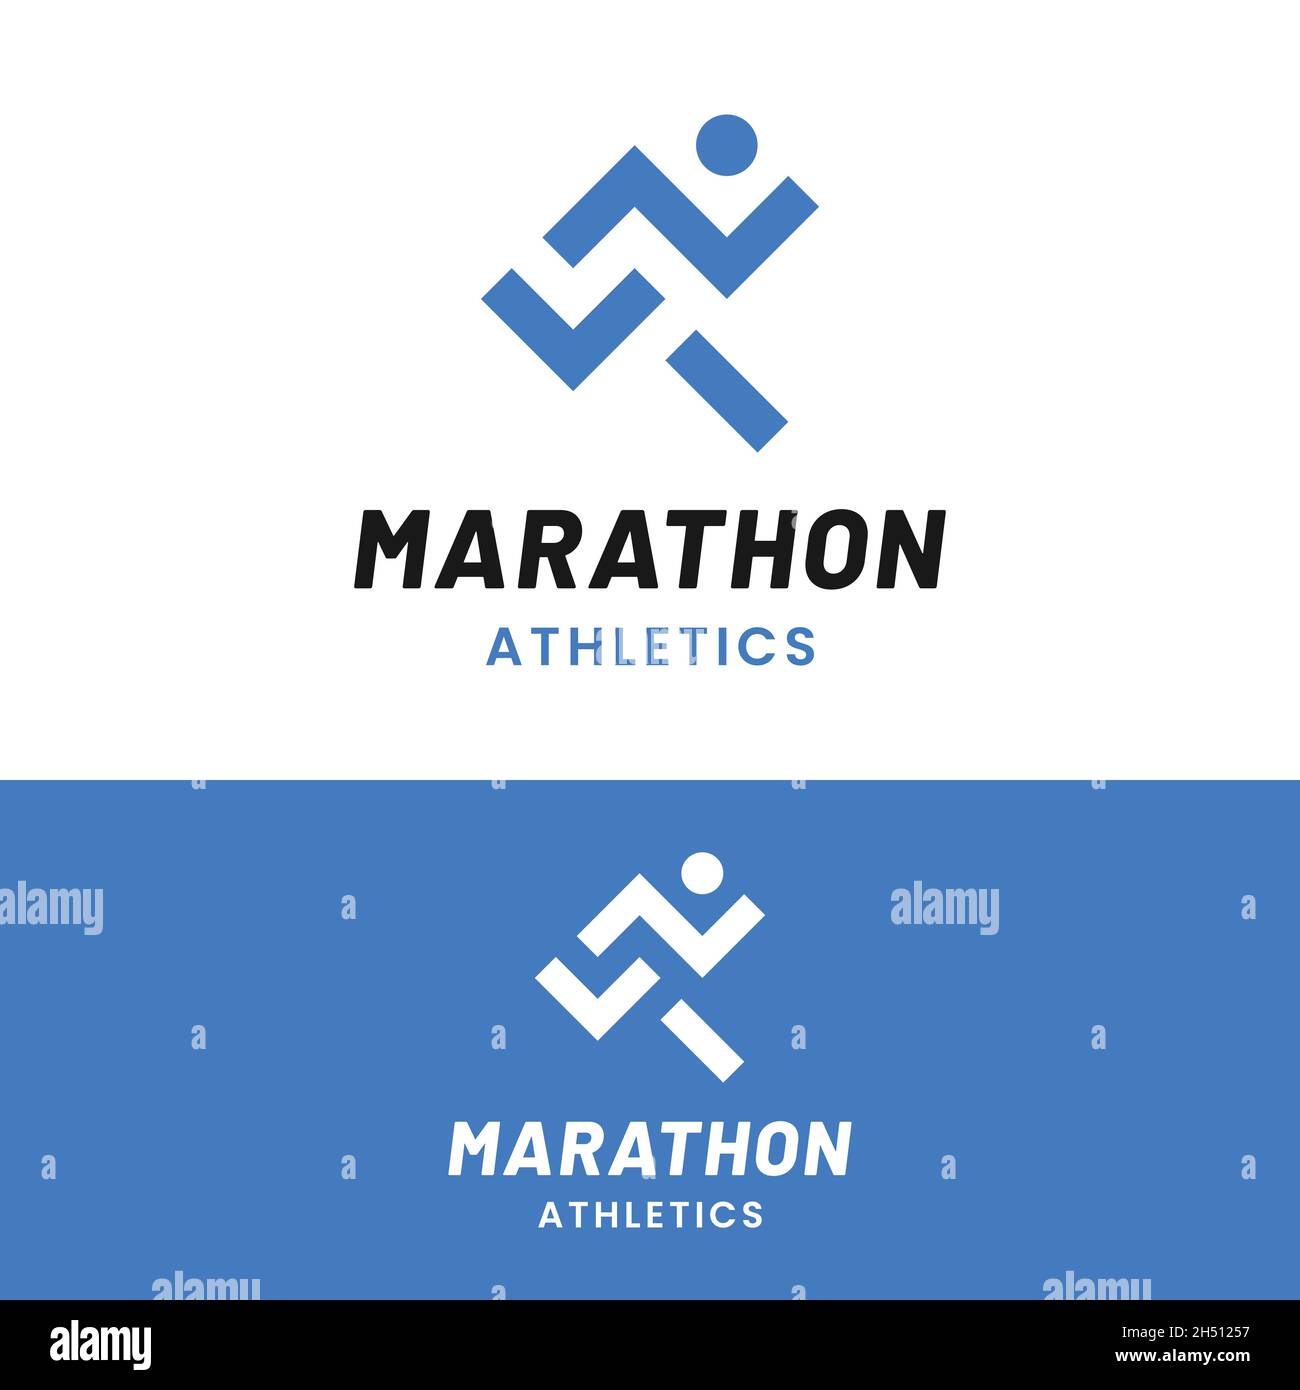 Semplice modello minimal Marathon running jogging Logo Design. Adatto per eventi sportivi Fitness palestra Athlete Apparel Trainer Shop Business Company etc. Illustrazione Vettoriale